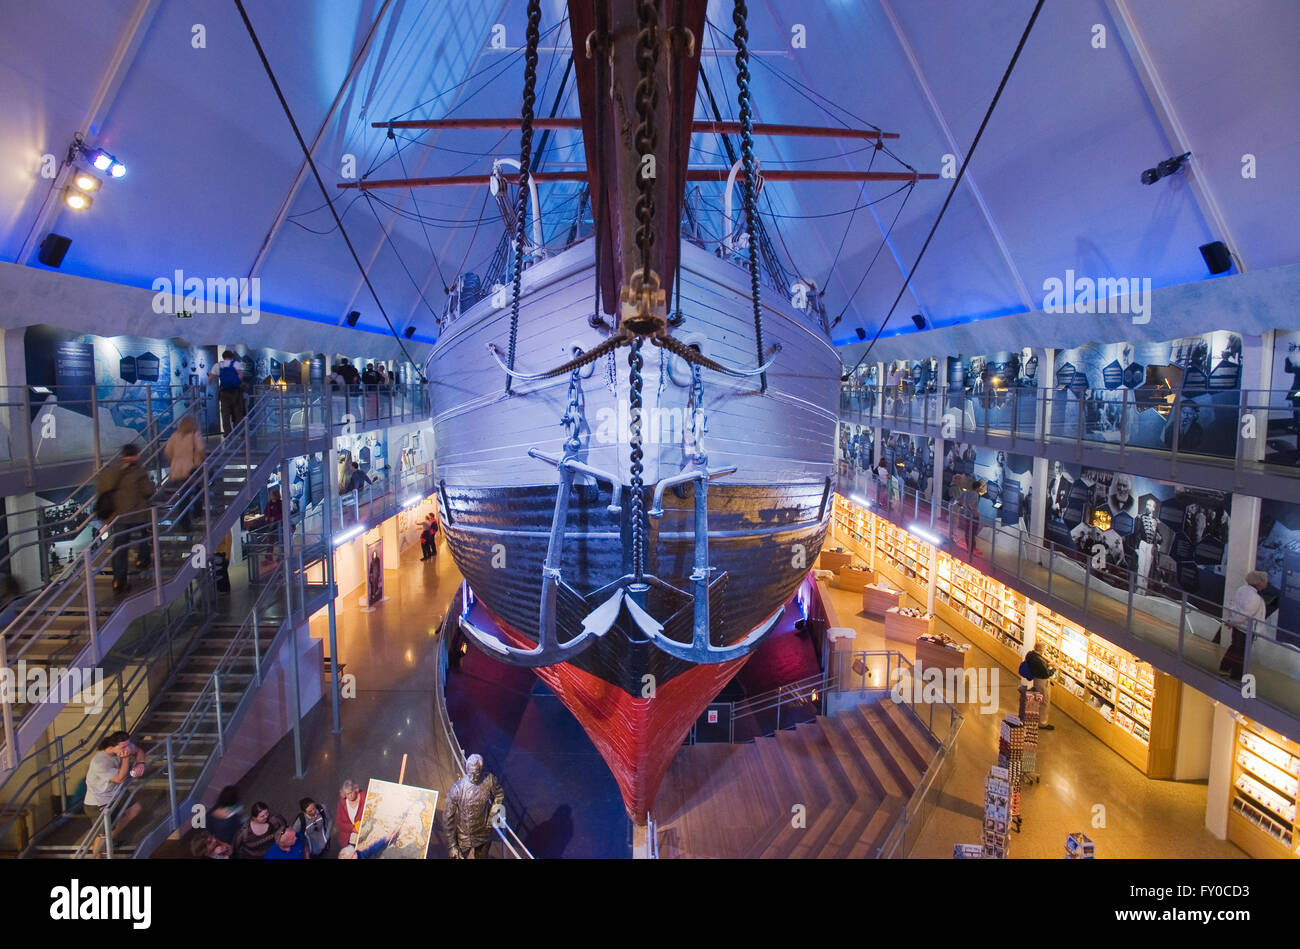 FRAM, navire d'expédition polaire historique, Musée Fram, Oslo, Norvège Banque D'Images